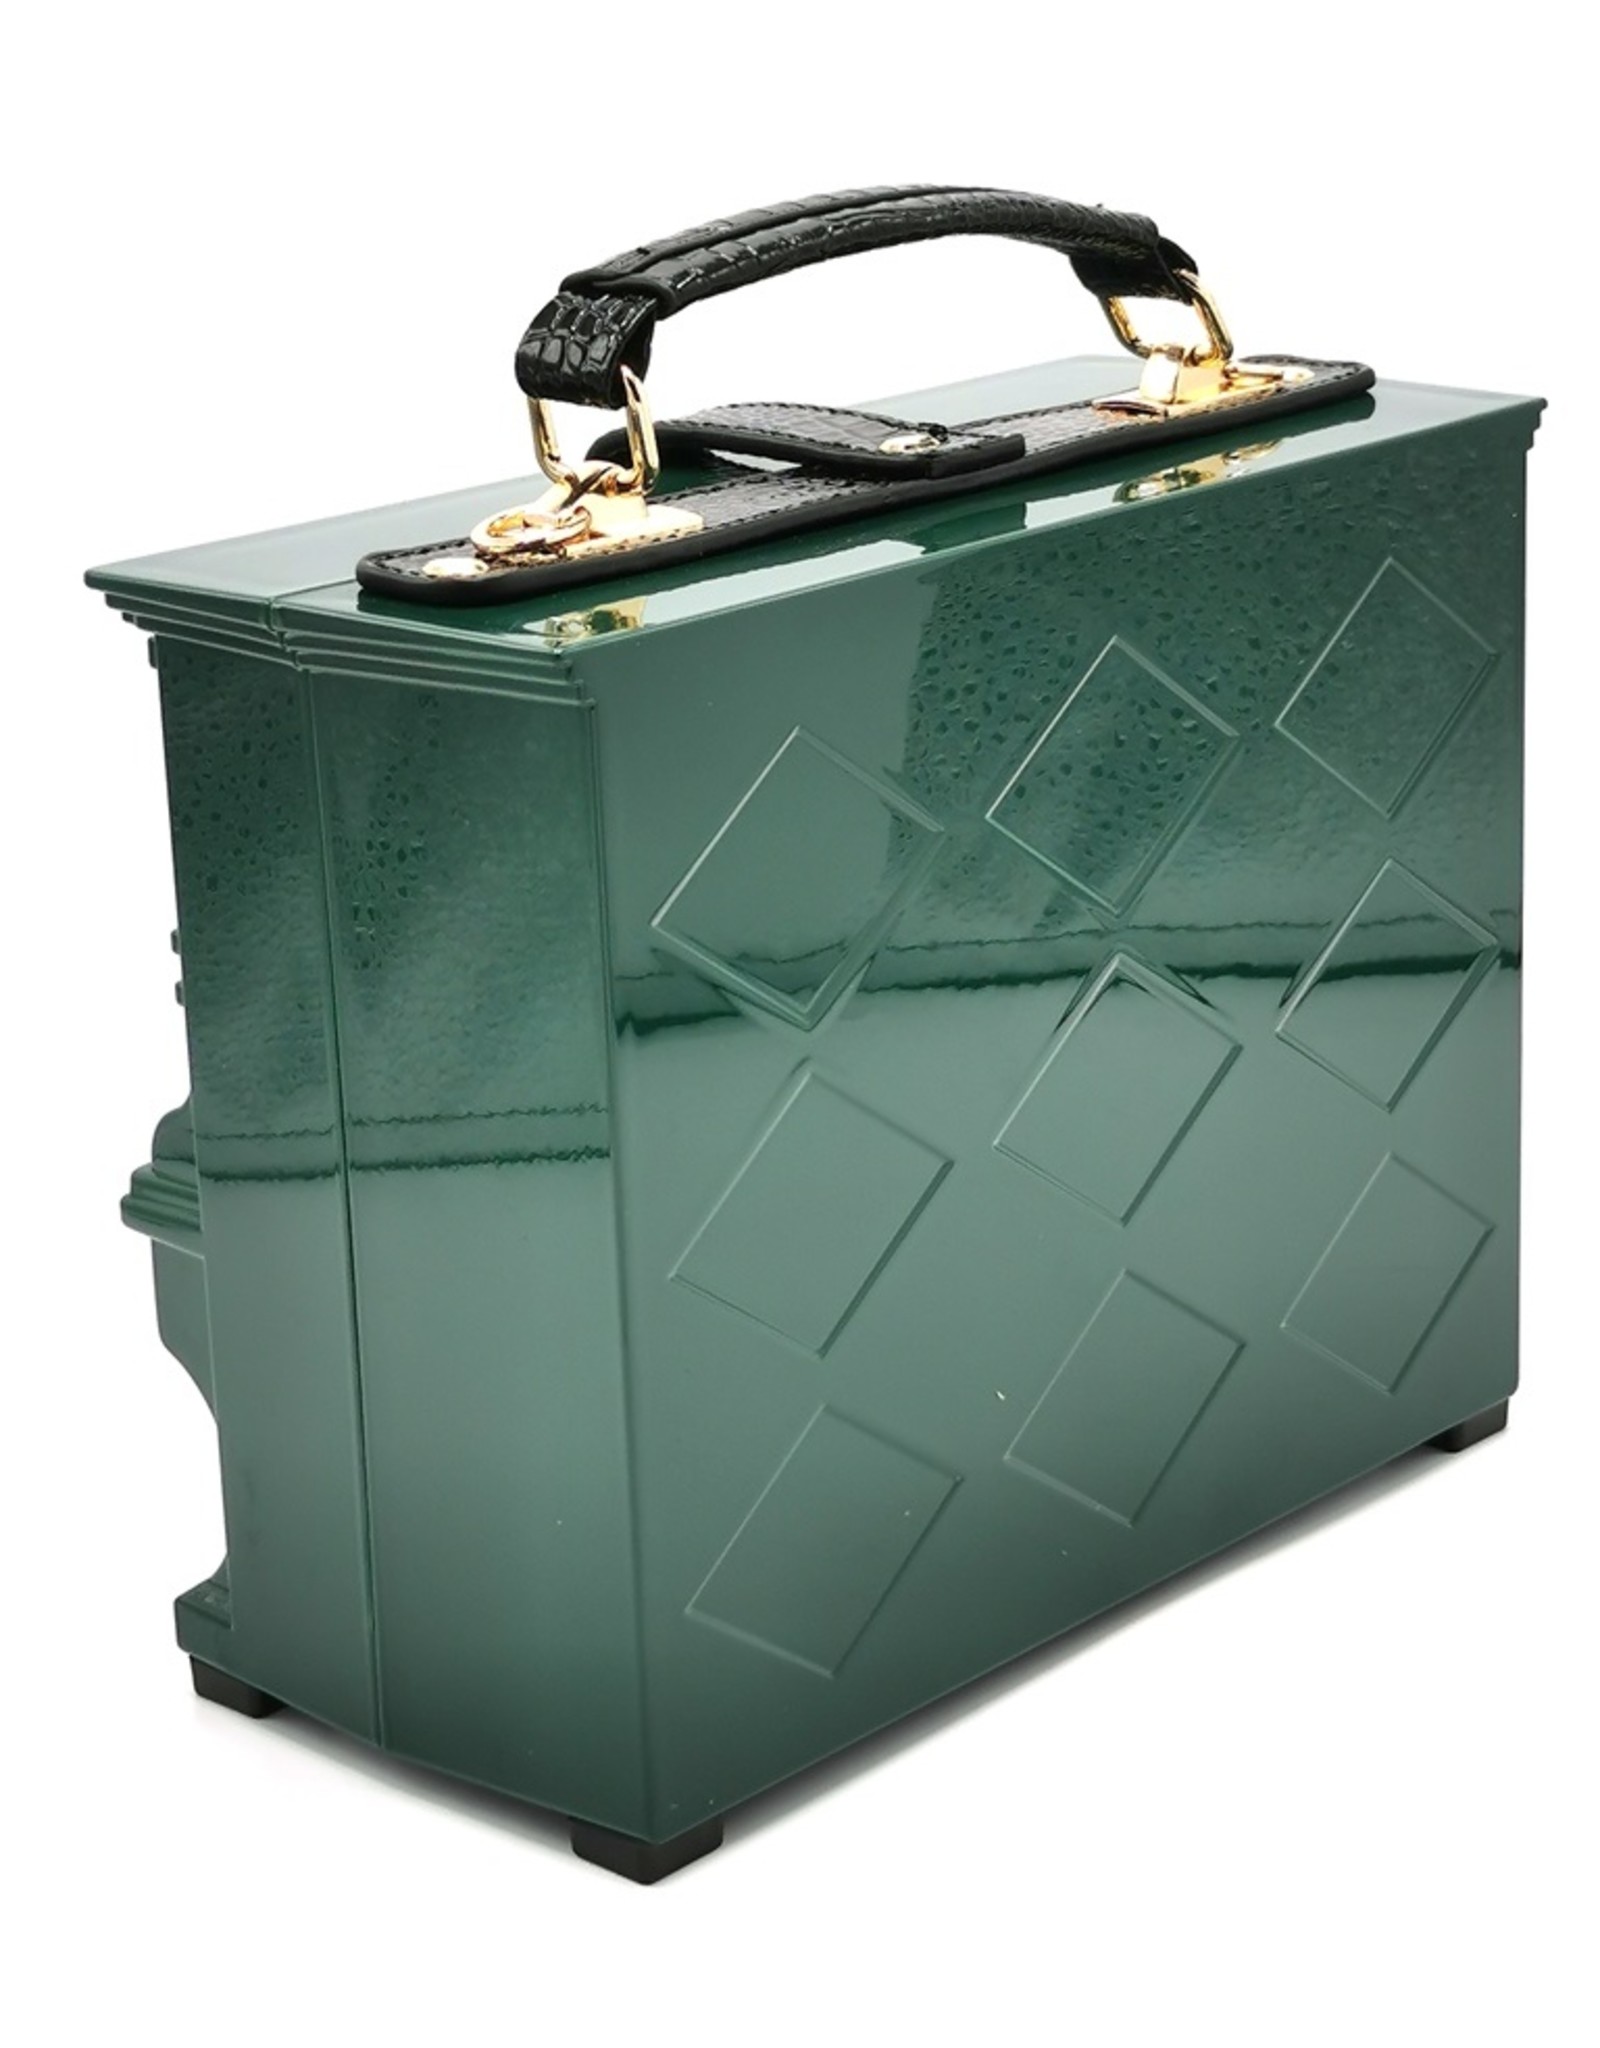 Magic Bags Fantasy bags and wallets - Piano Handbag shaped like Real Piano green